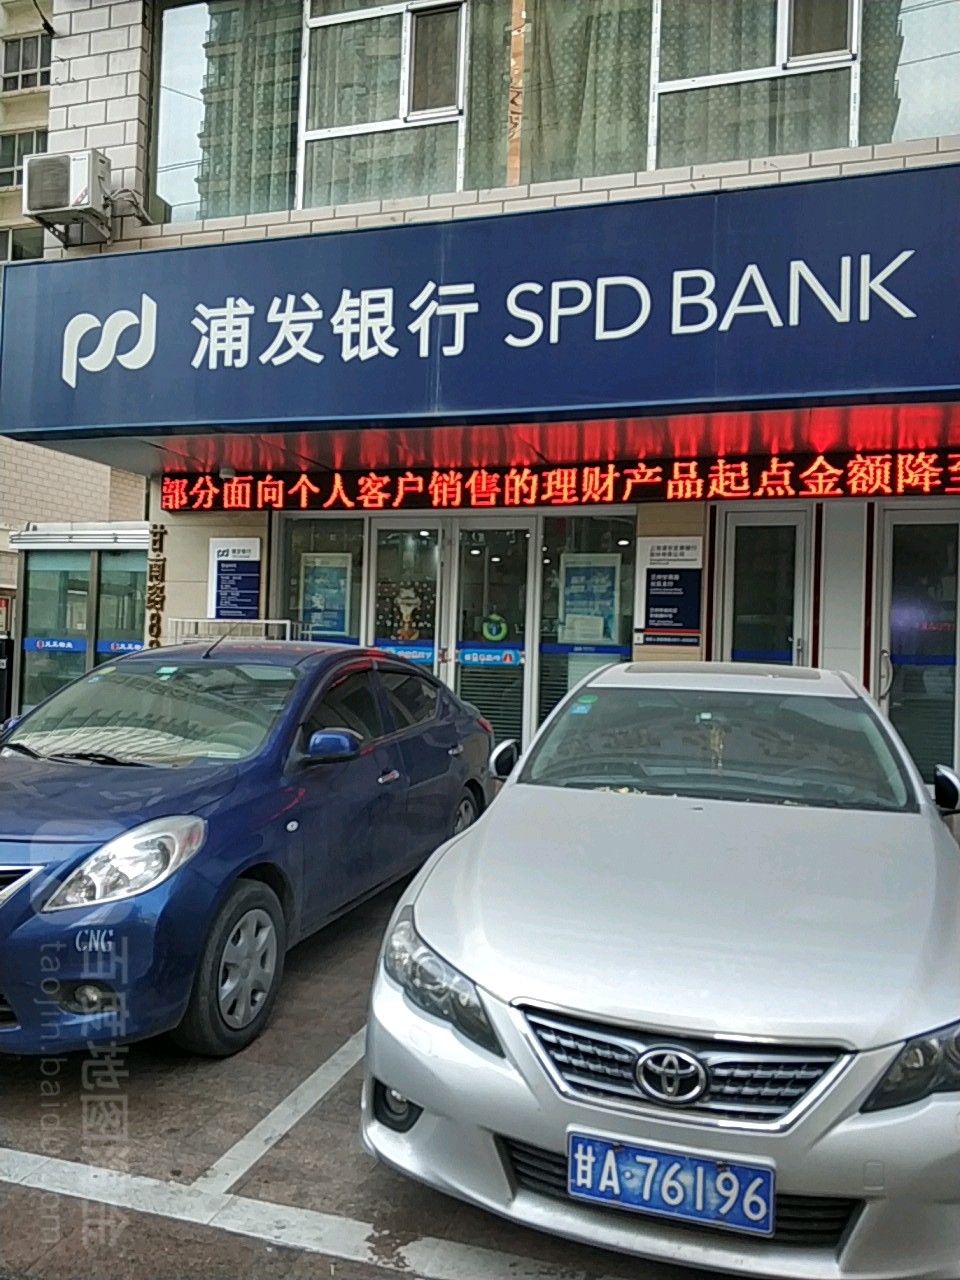 上海浦東發展銀行(蘭州甘南路社區支行)